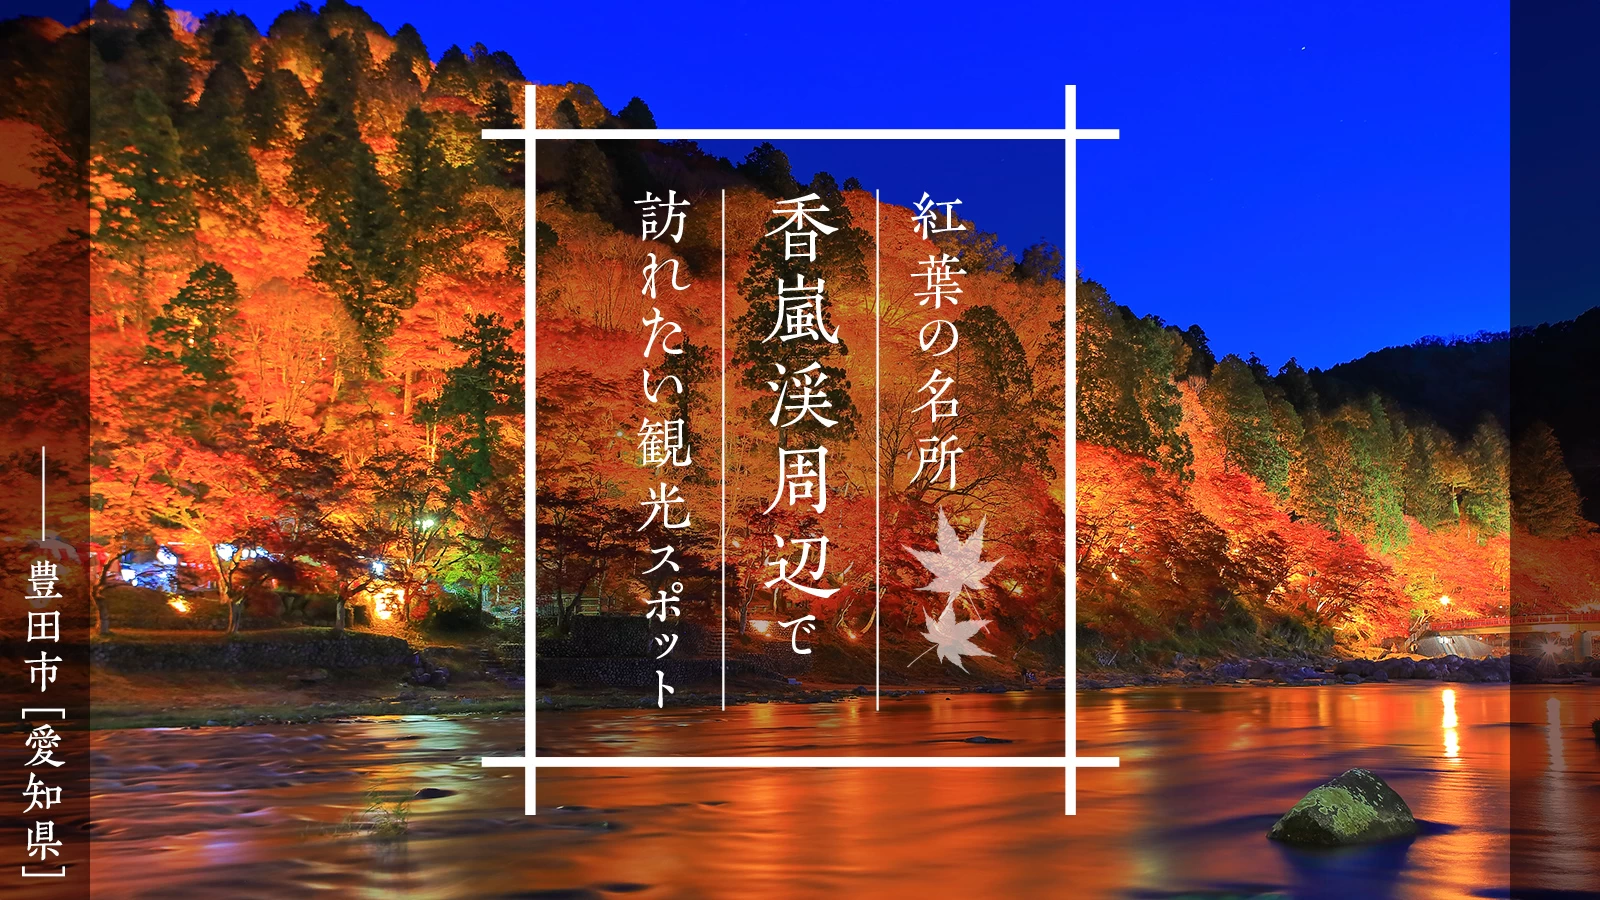 【愛知・豊田市】紅葉の名所「香嵐渓」周辺で訪れたい観光スポット8選